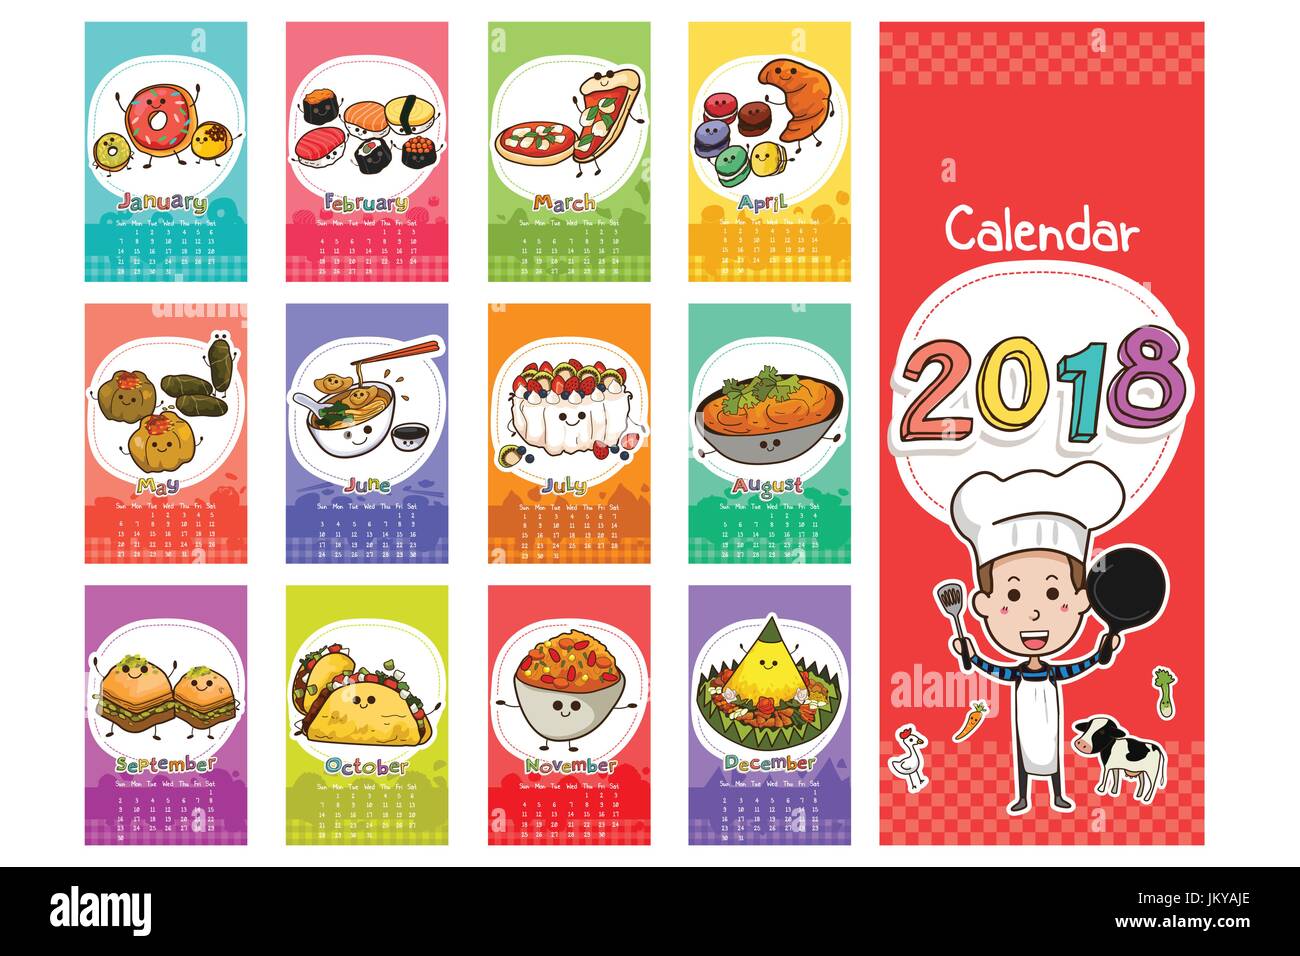 Eine Vektor-Illustration von 2018 Essen unter dem Motto Kalender im Cartoon-Stil Stock Vektor